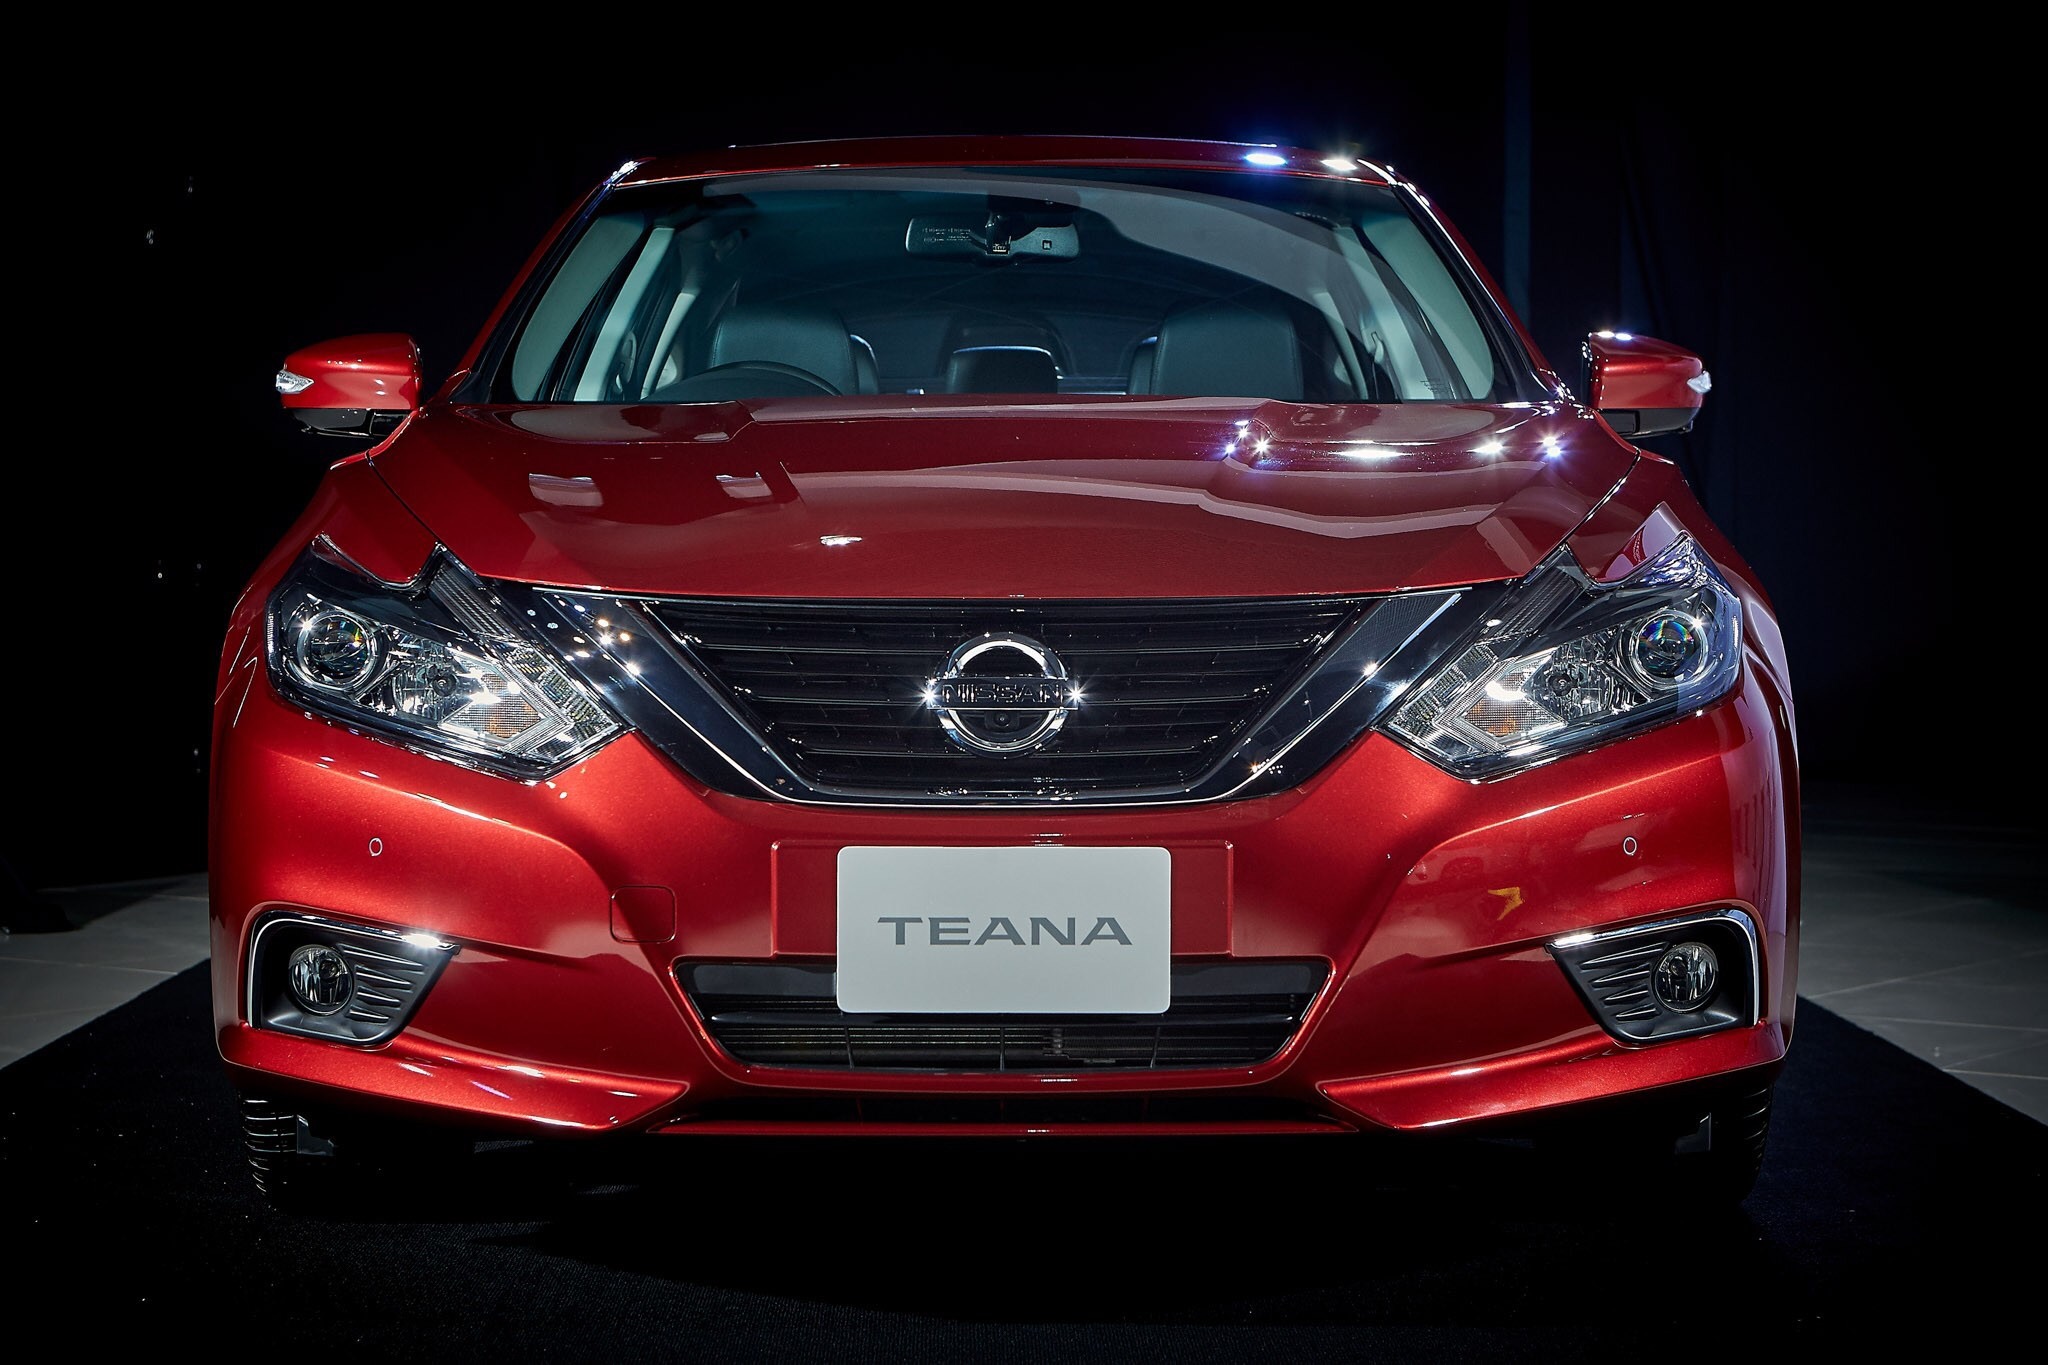 Nissan Teana 2.0 XL 2019 2019 ราคา 1,426,000 บาท นิสสัน